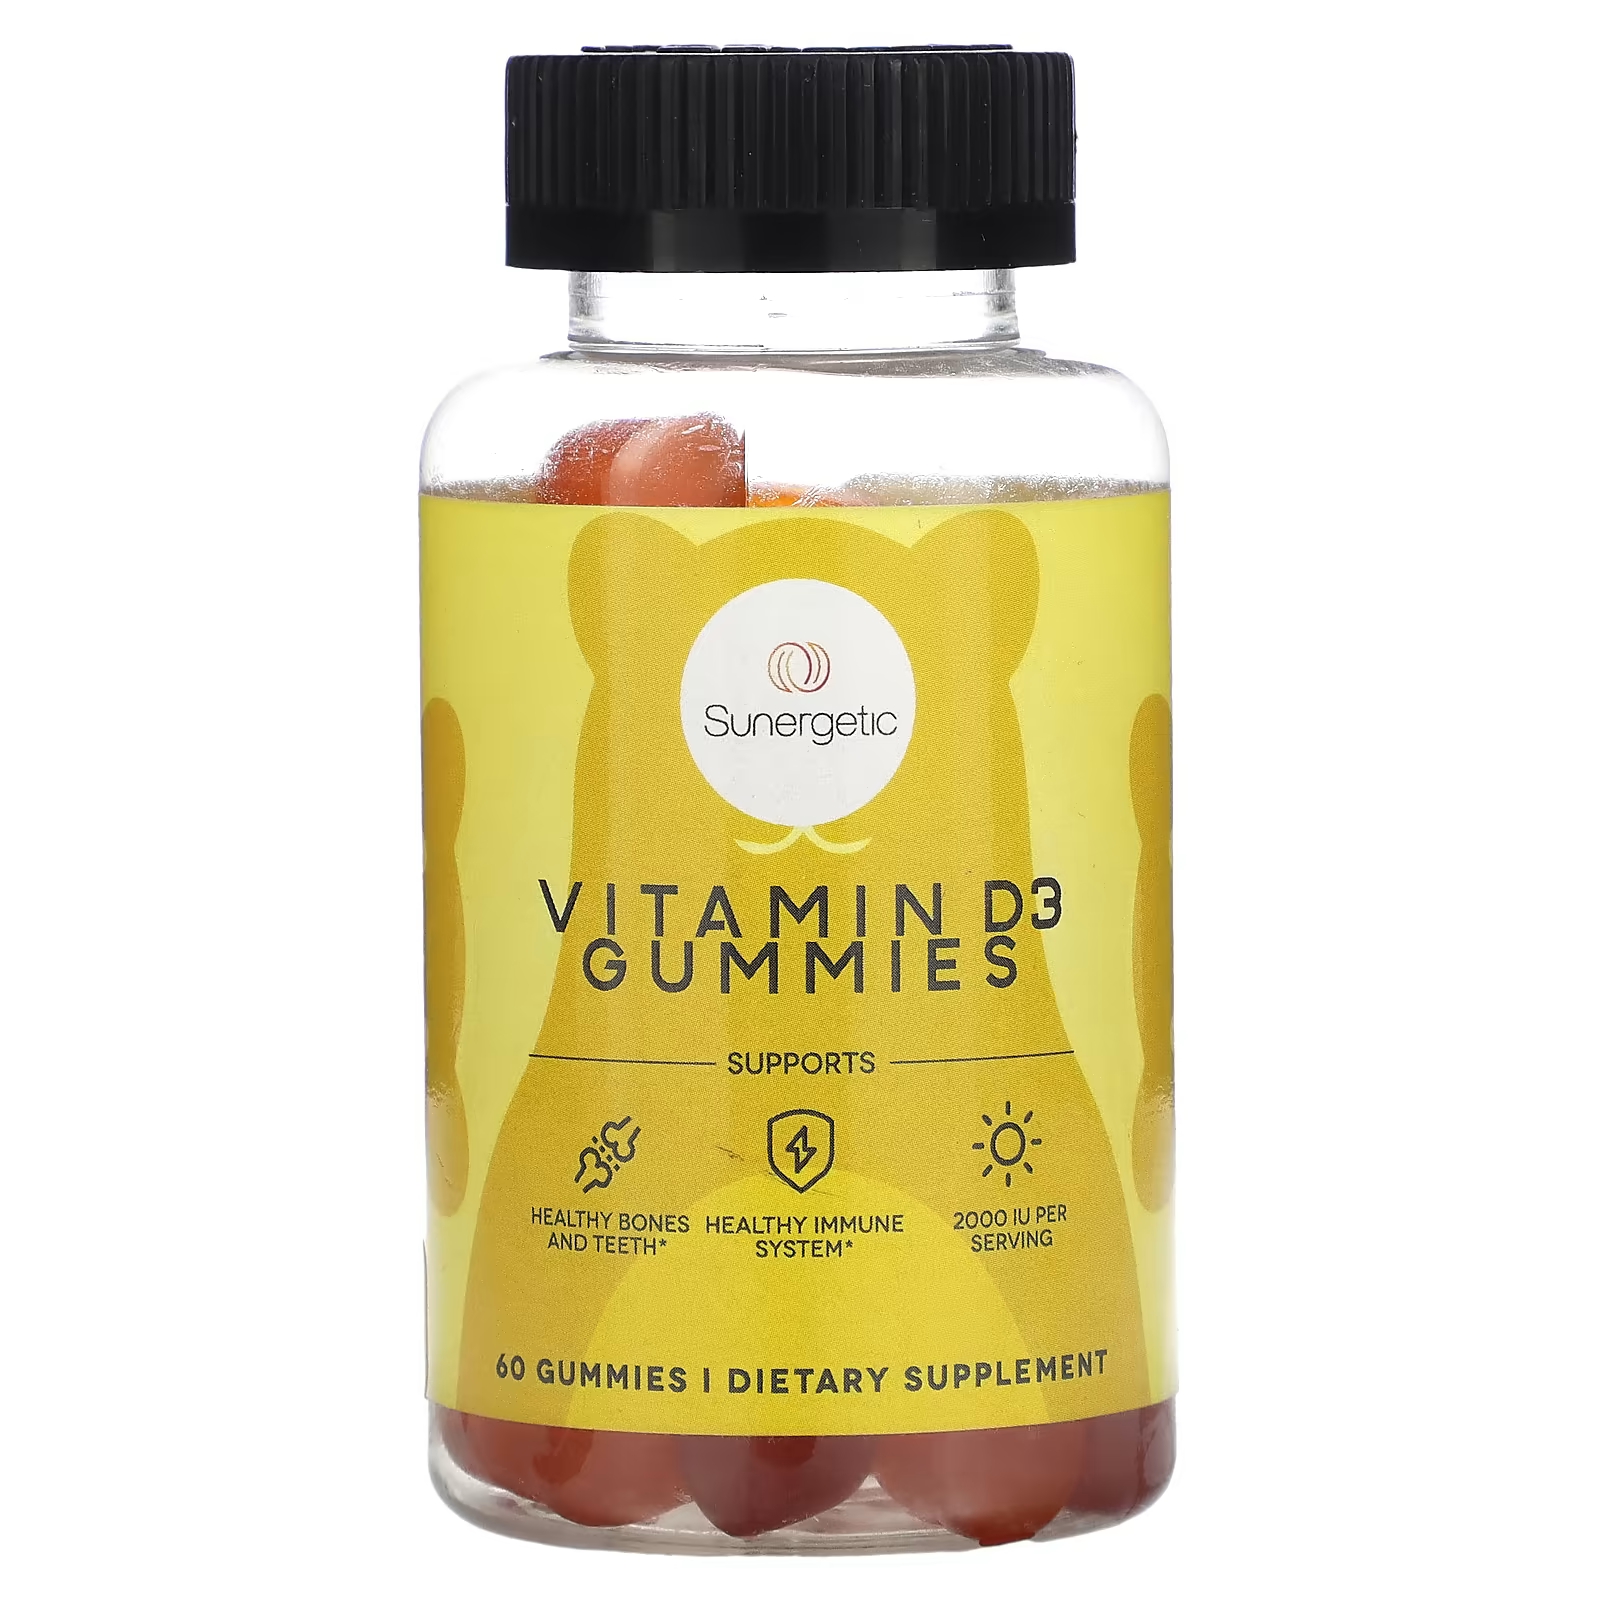 Витамином D3 Sunergetic жевательные конфеты с клубника персиком и манго, 60 конфет nordic naturals жевательные таблетки с витамином d3 со вкусом лесных ягод 1000 ме 60 шт